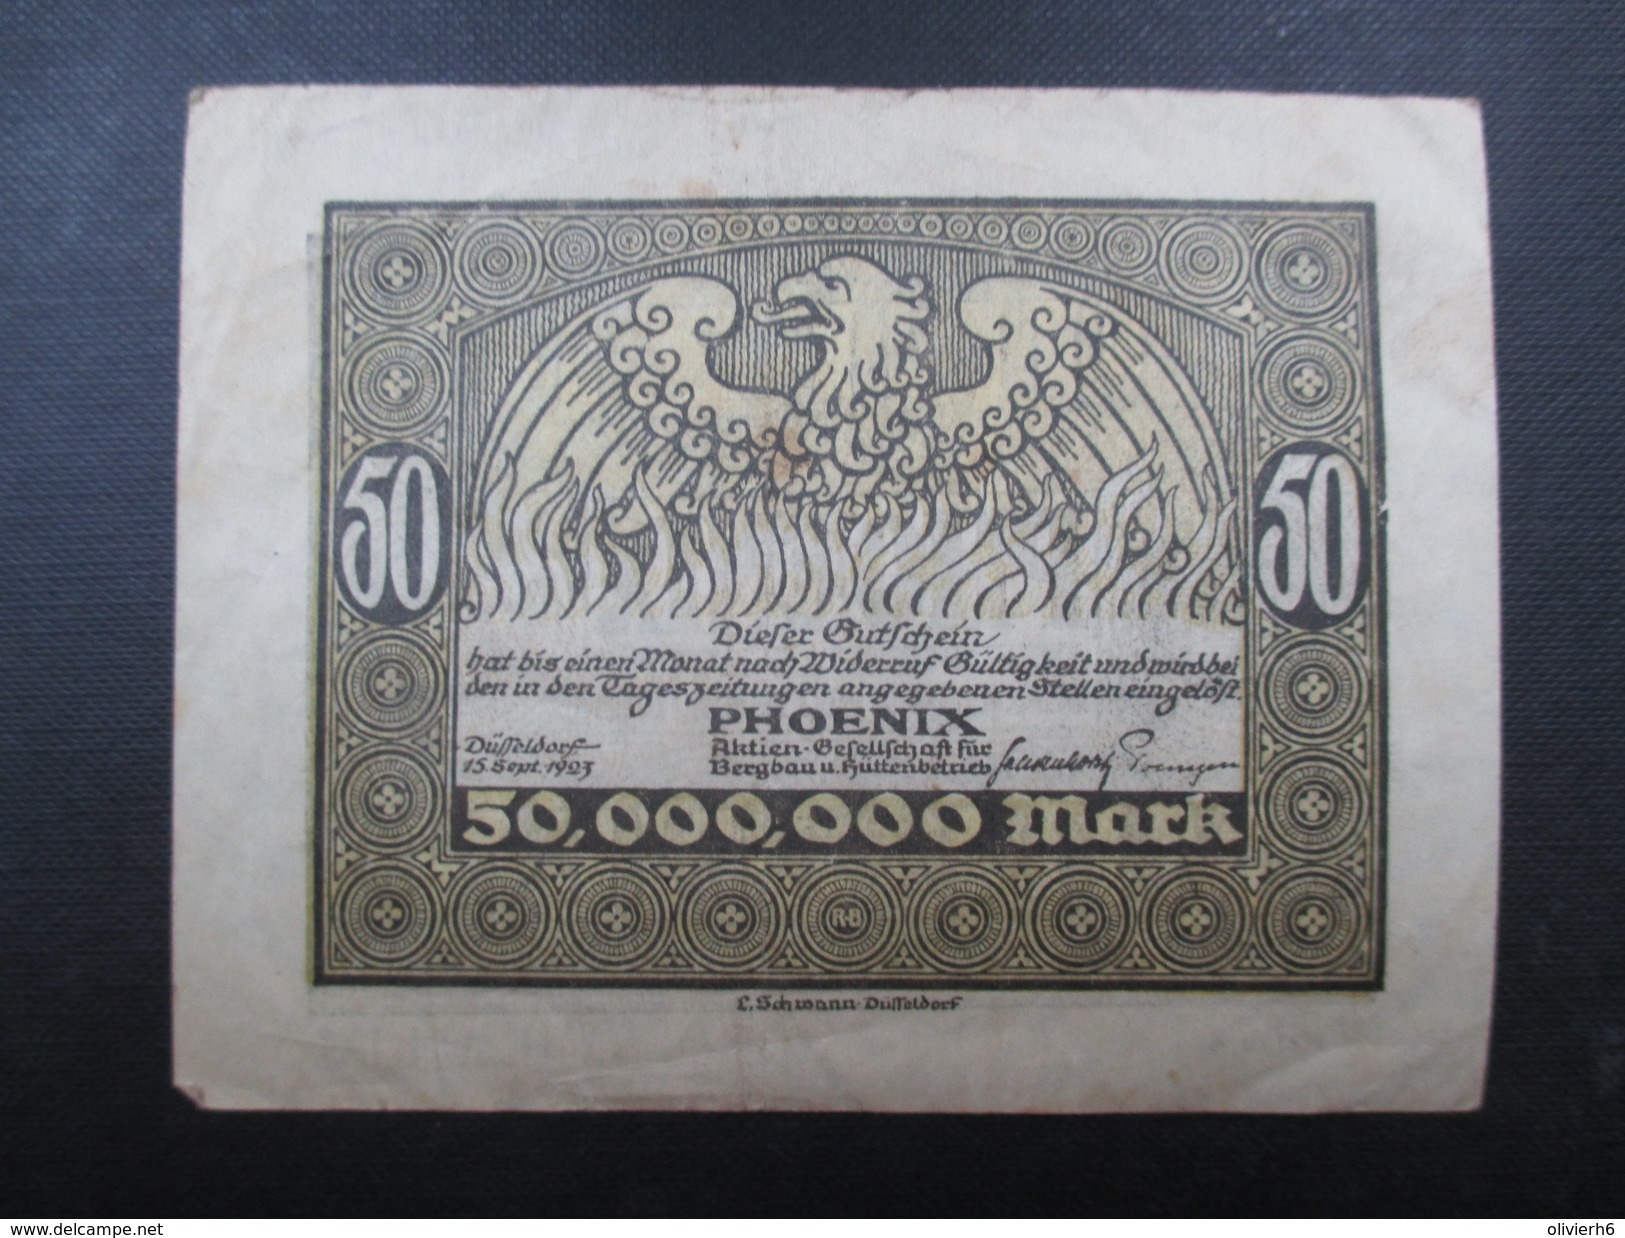 BILLET REICHSBANKNOTE (V1719) FUNFZIG MILLIONEN MARK (2 Vues) PHOENIX Dusseldorf 15/09/1923 - 50 Miljoen Mark